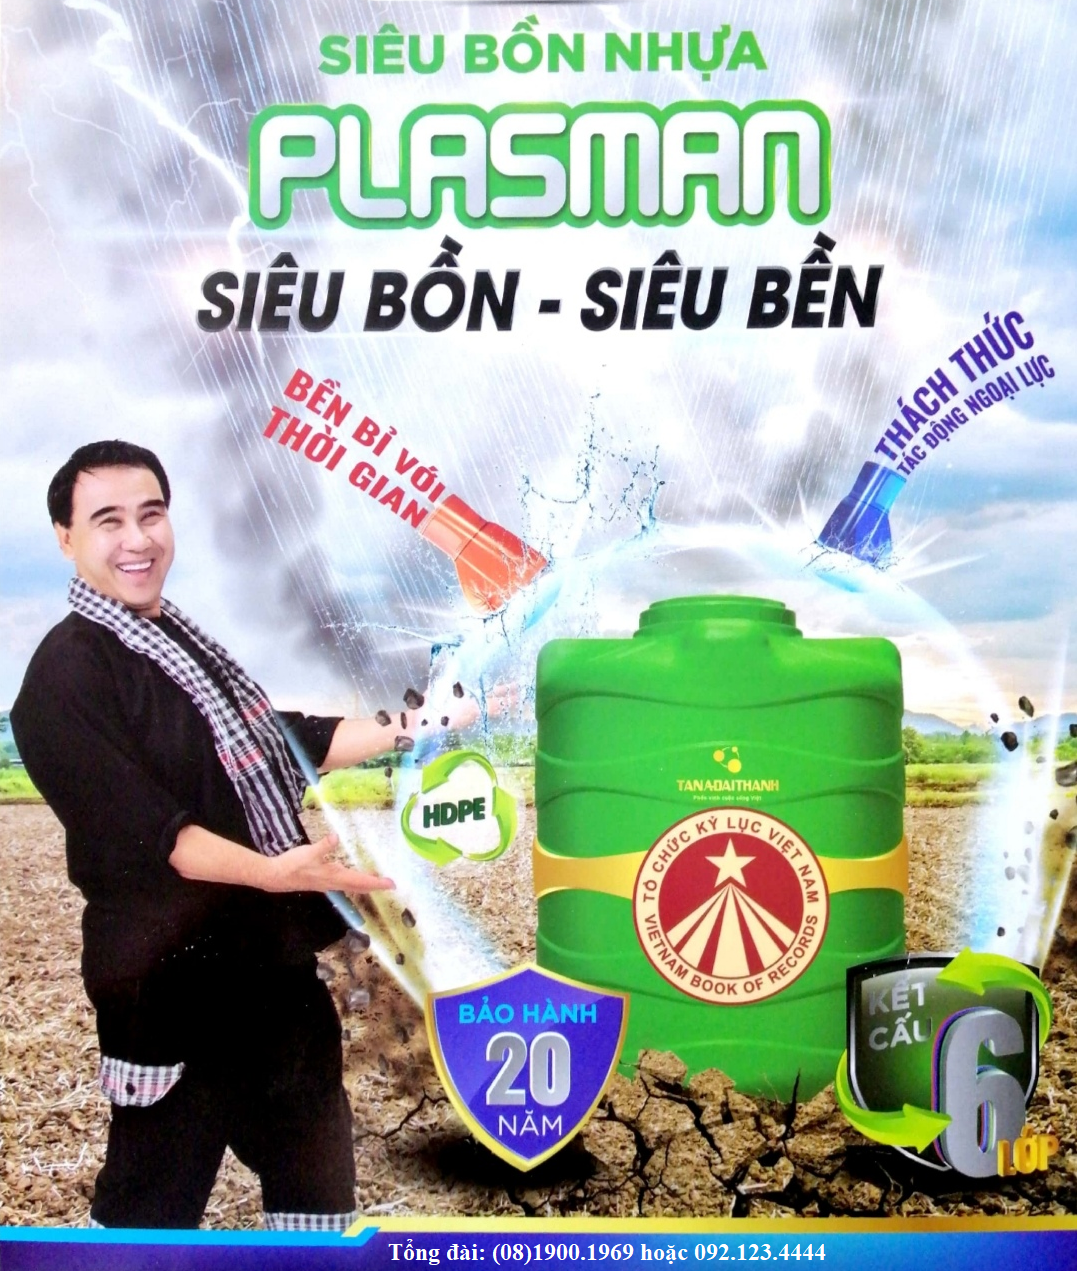 Cấu tạo bồn nước nhựa Plassman 1000L đứng Đại Thành